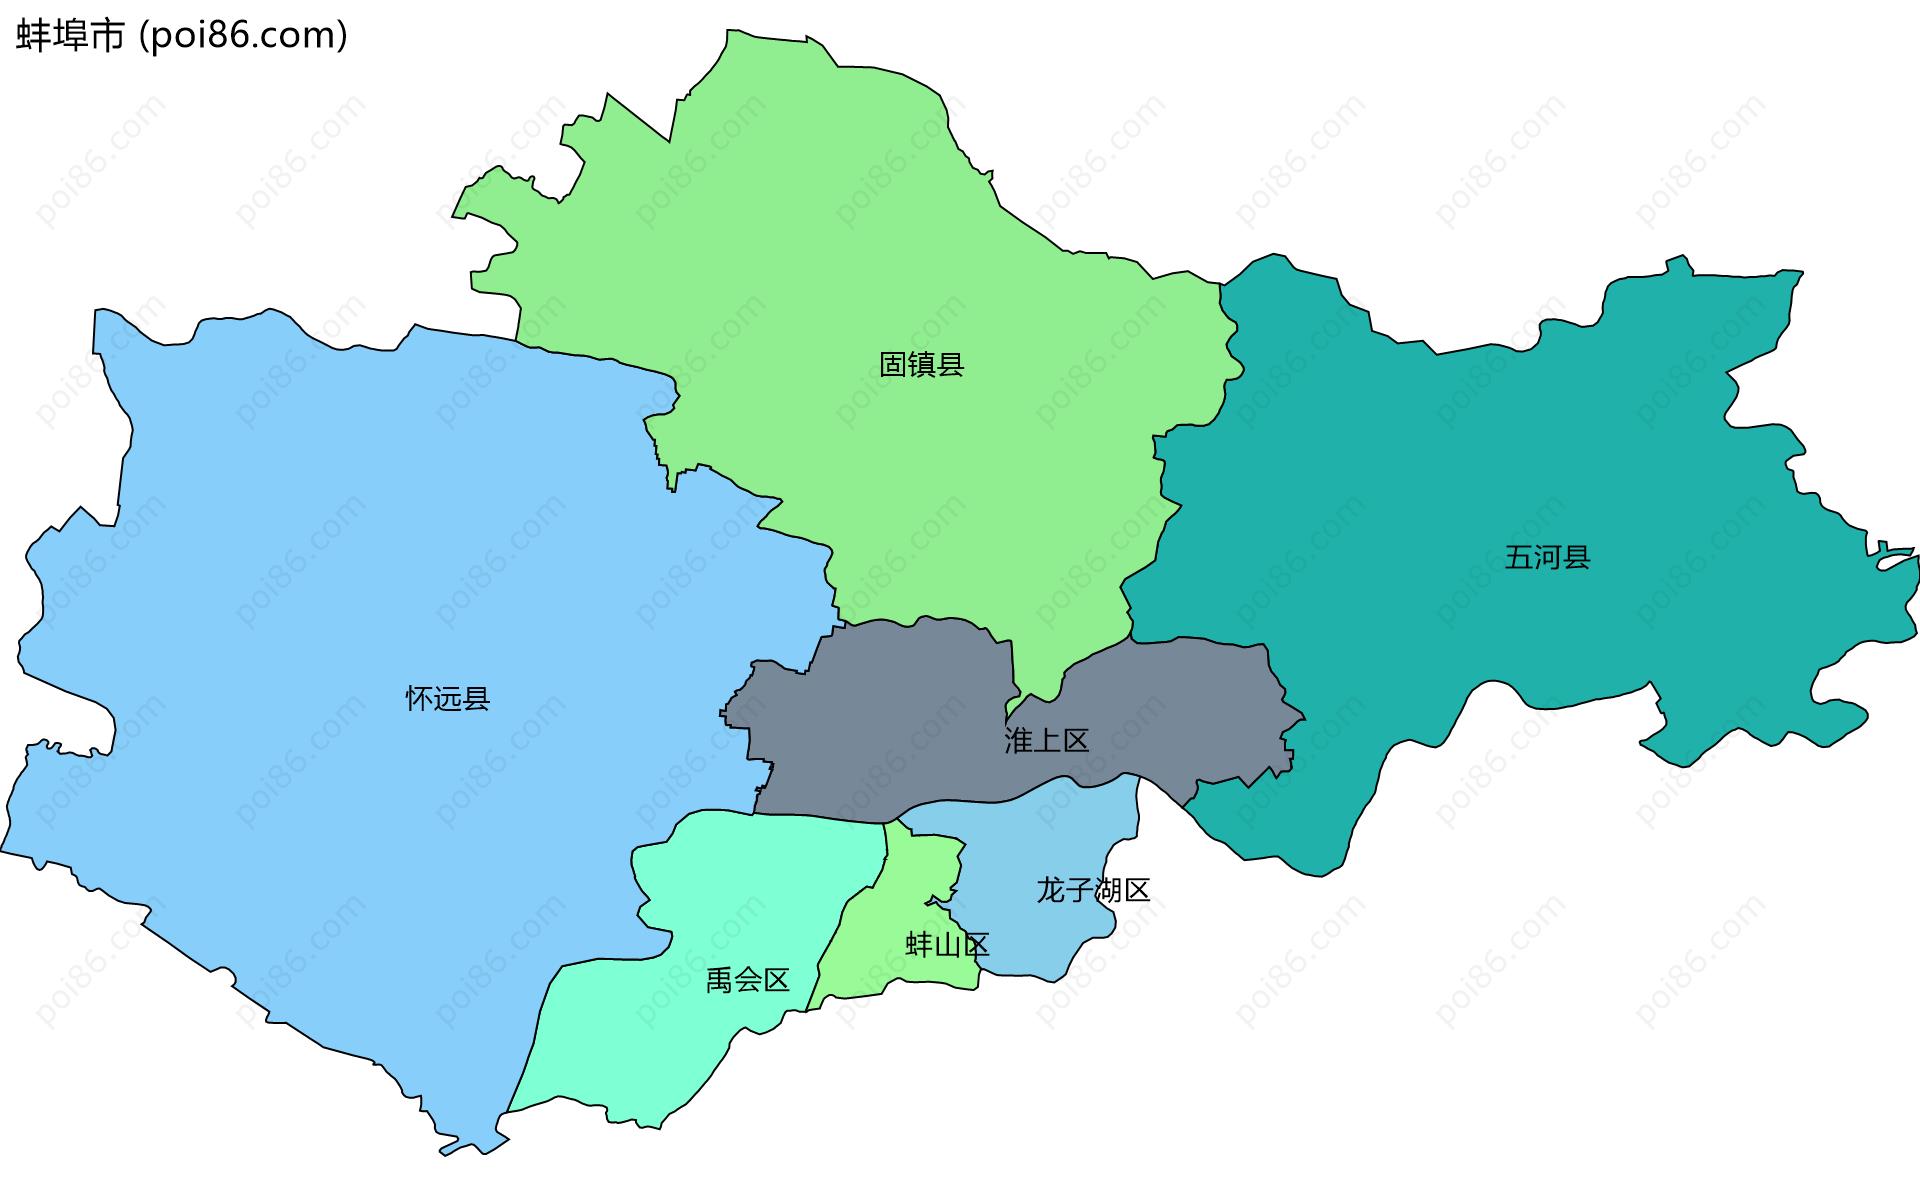 蚌埠市边界地图